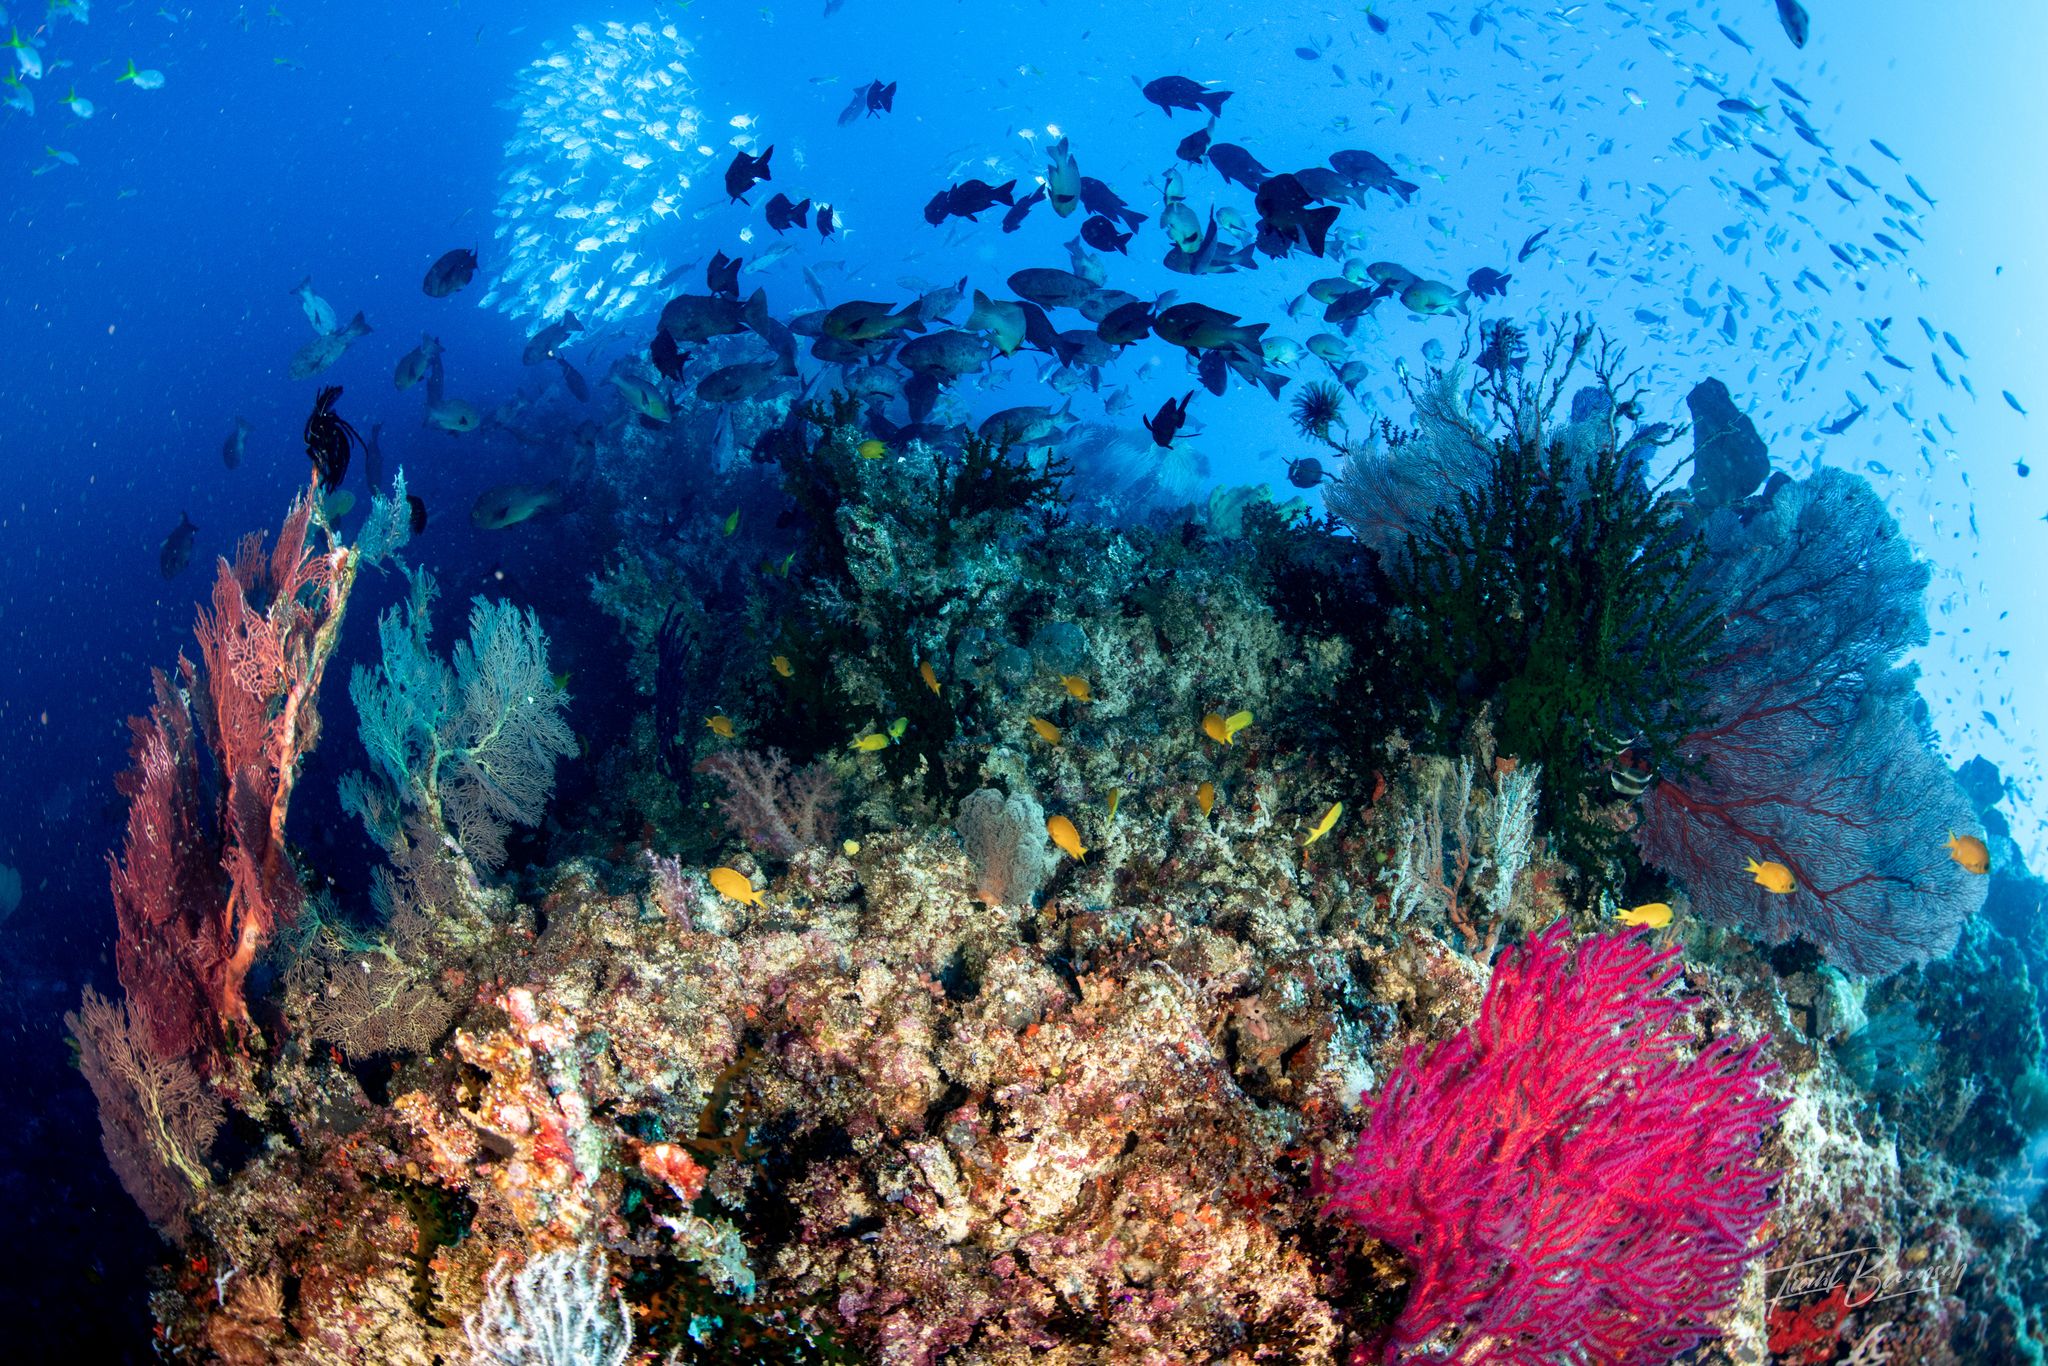 Coral reef scene in the Solomon Islands by Frank Baensch